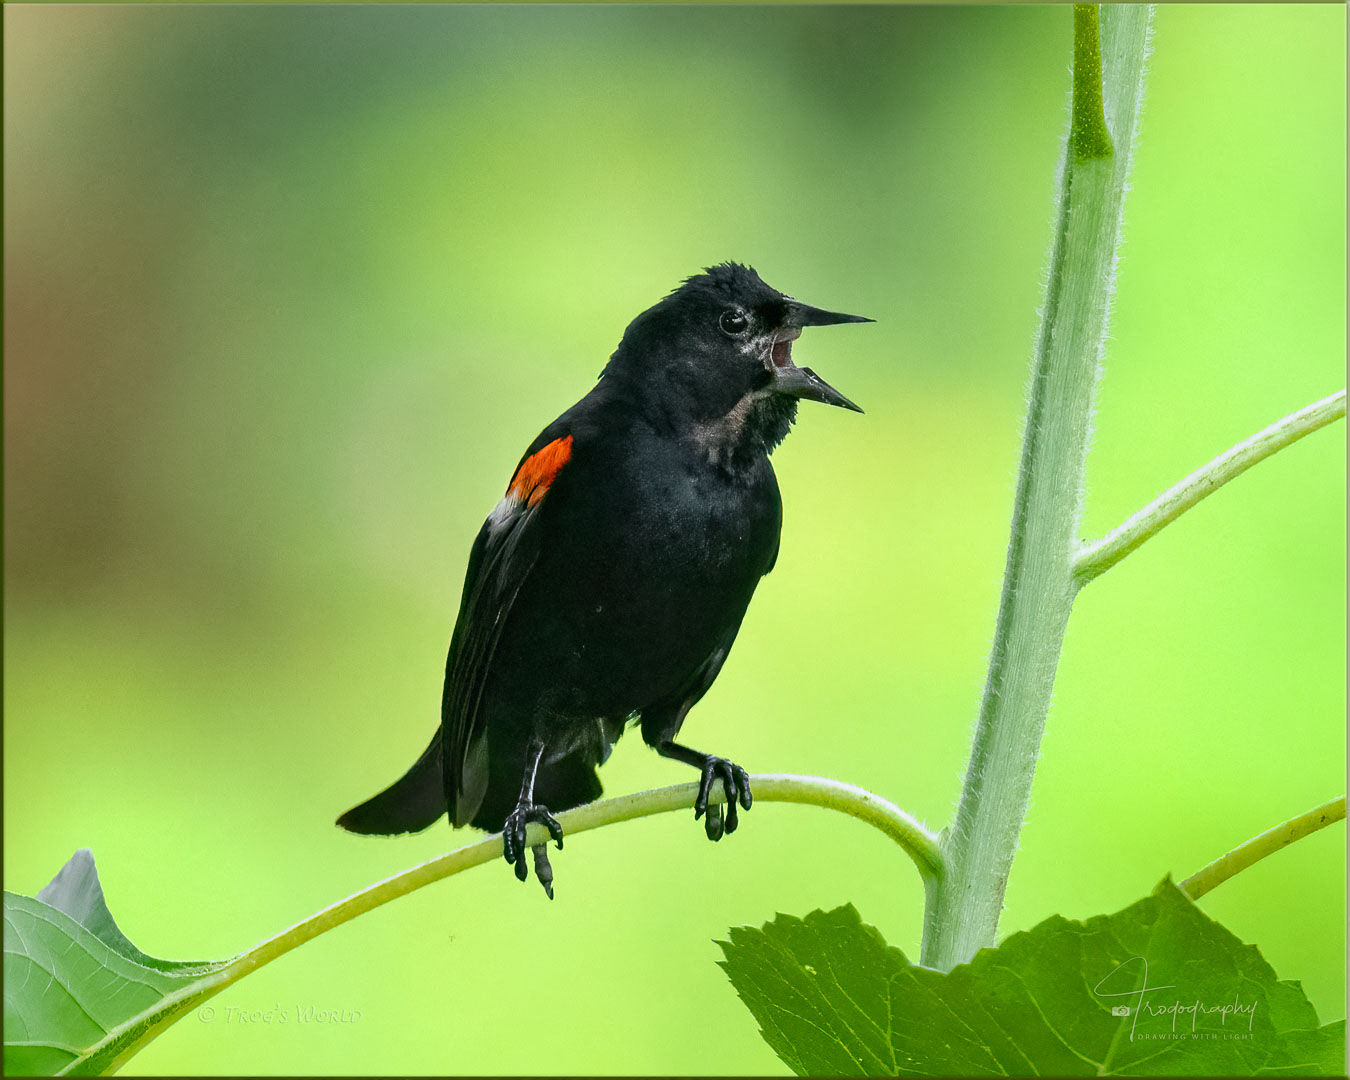 Red-winged Blackbird singing